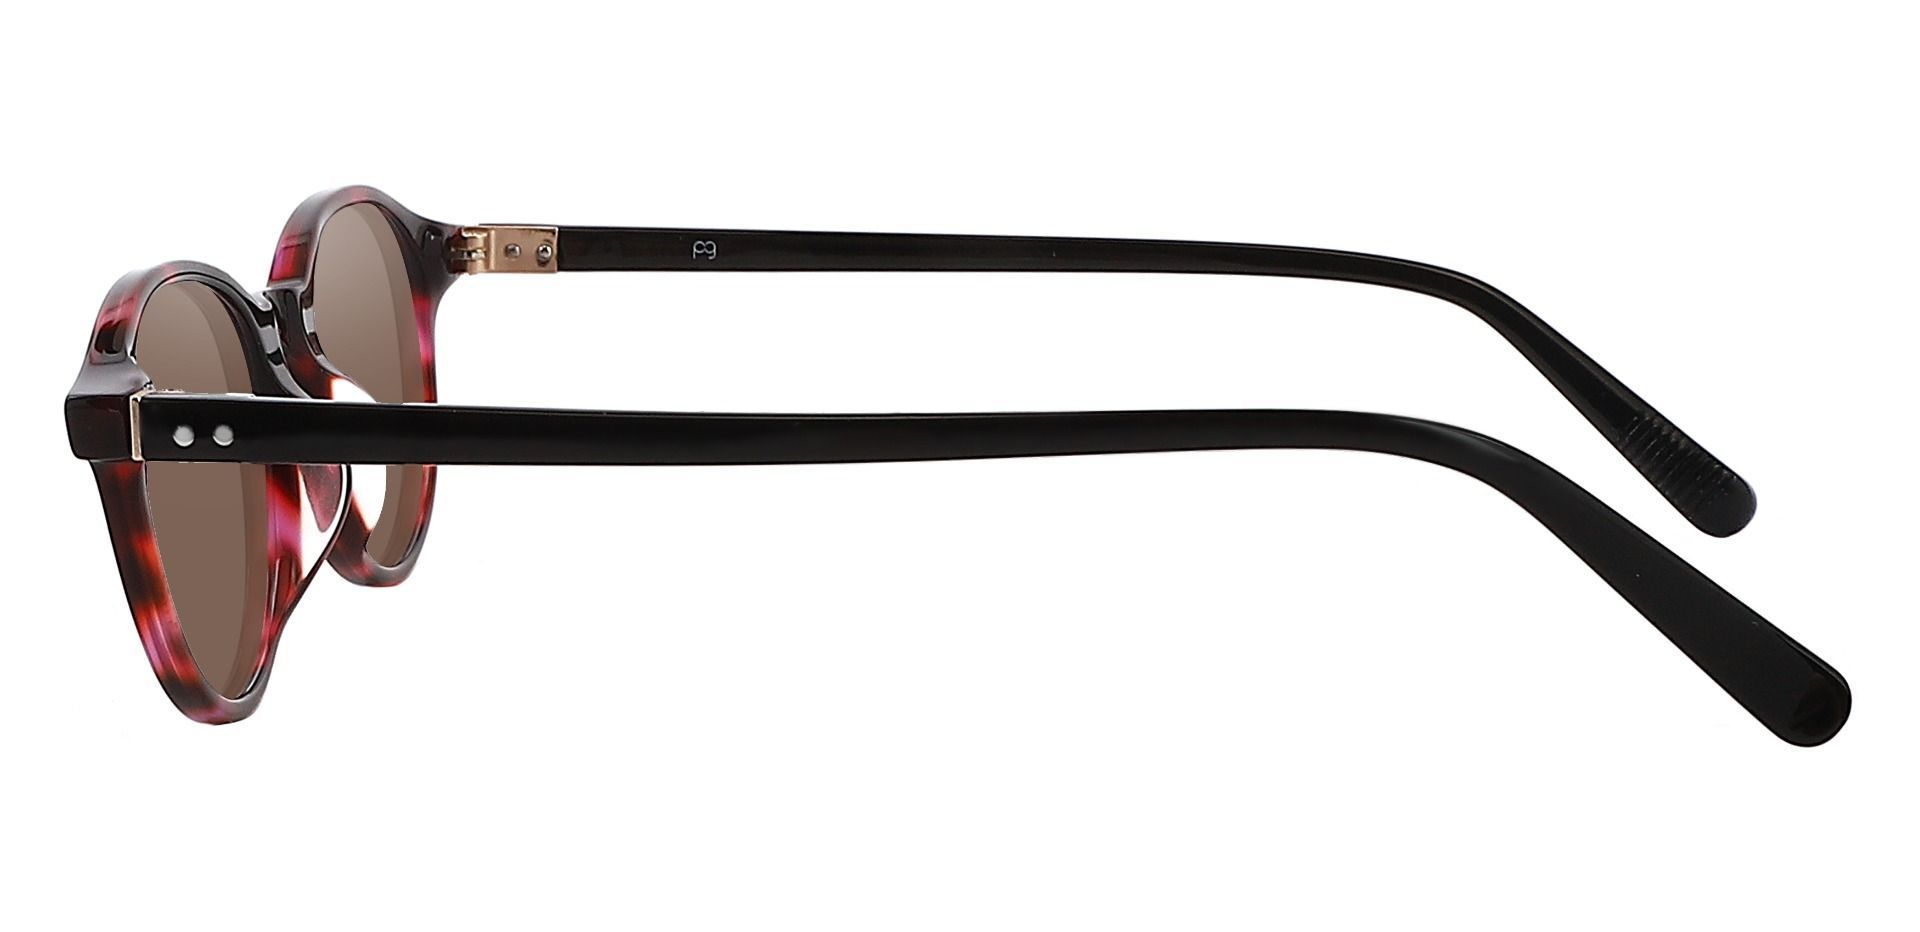 Avon Oval Prescription Sunglasses - Tortoise Frame With Brown Lenses